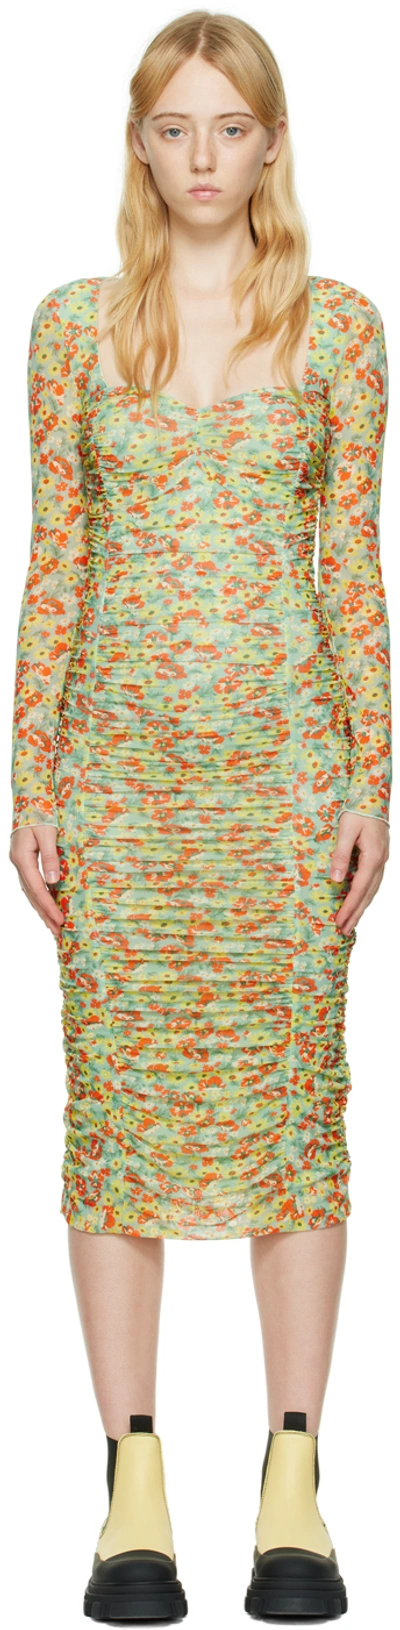 Ganni Printed Mesh Midi Dress In Multi-colored